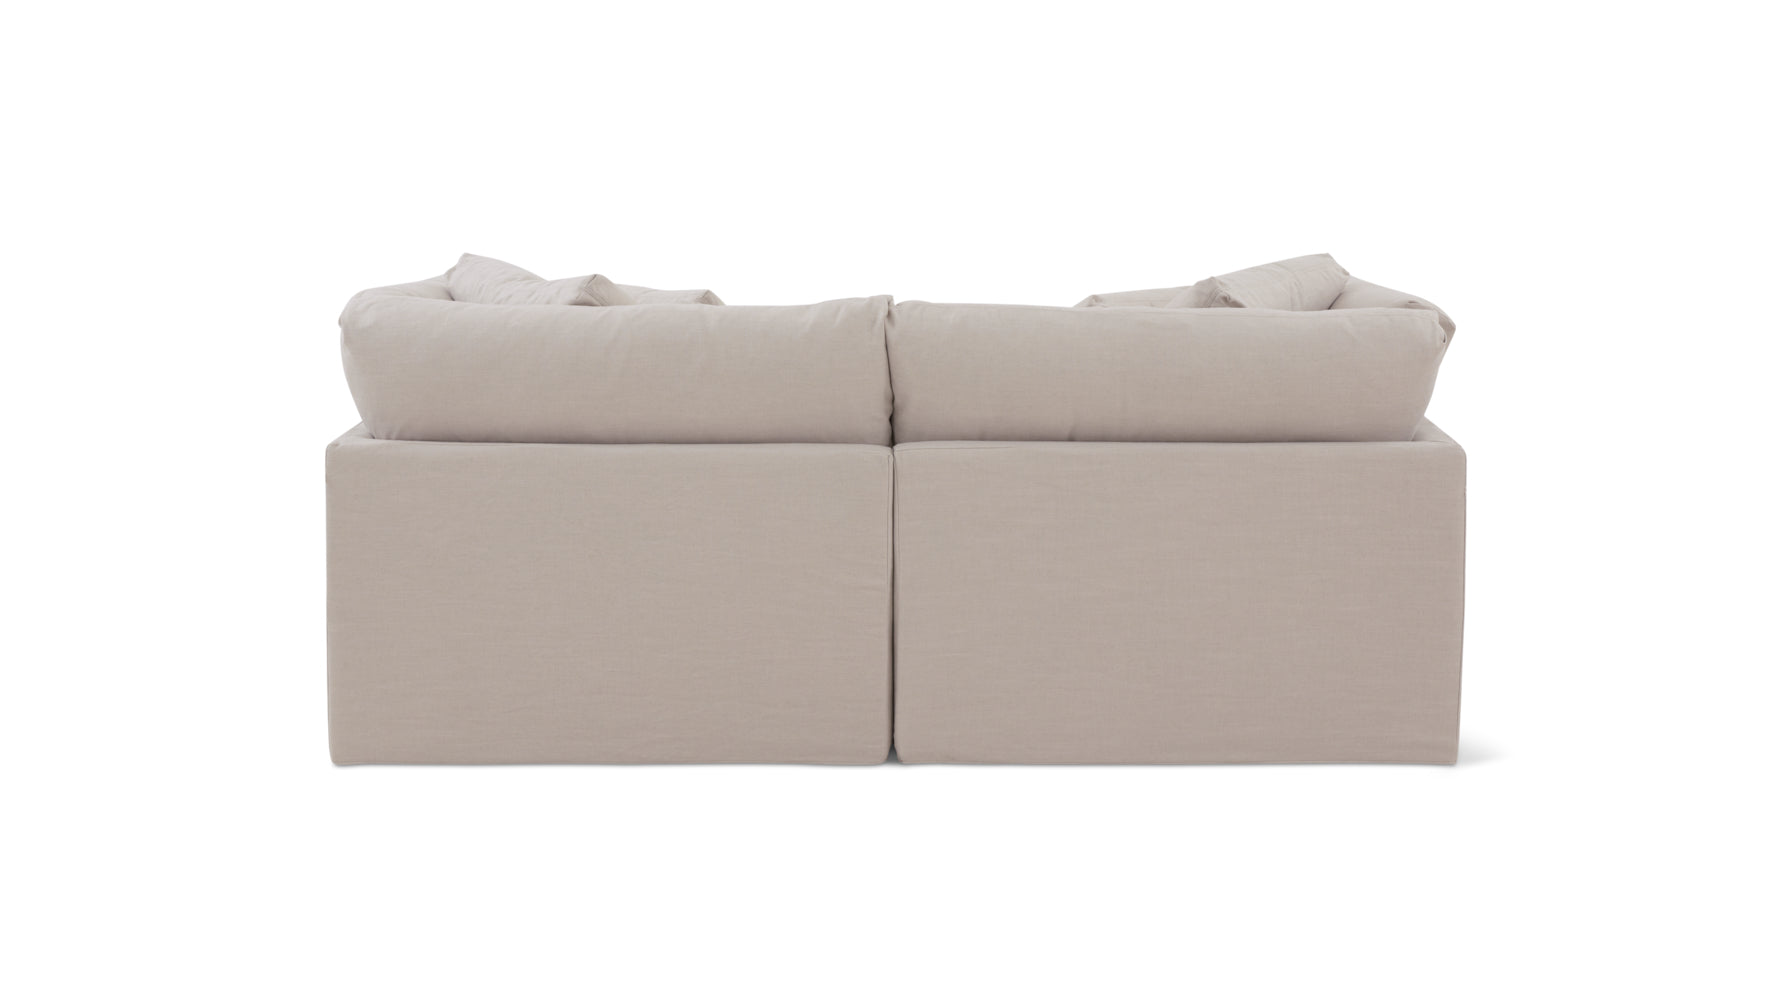 Get Together™ 2 Piece Modular Sofa, Large, Clay - Image 7